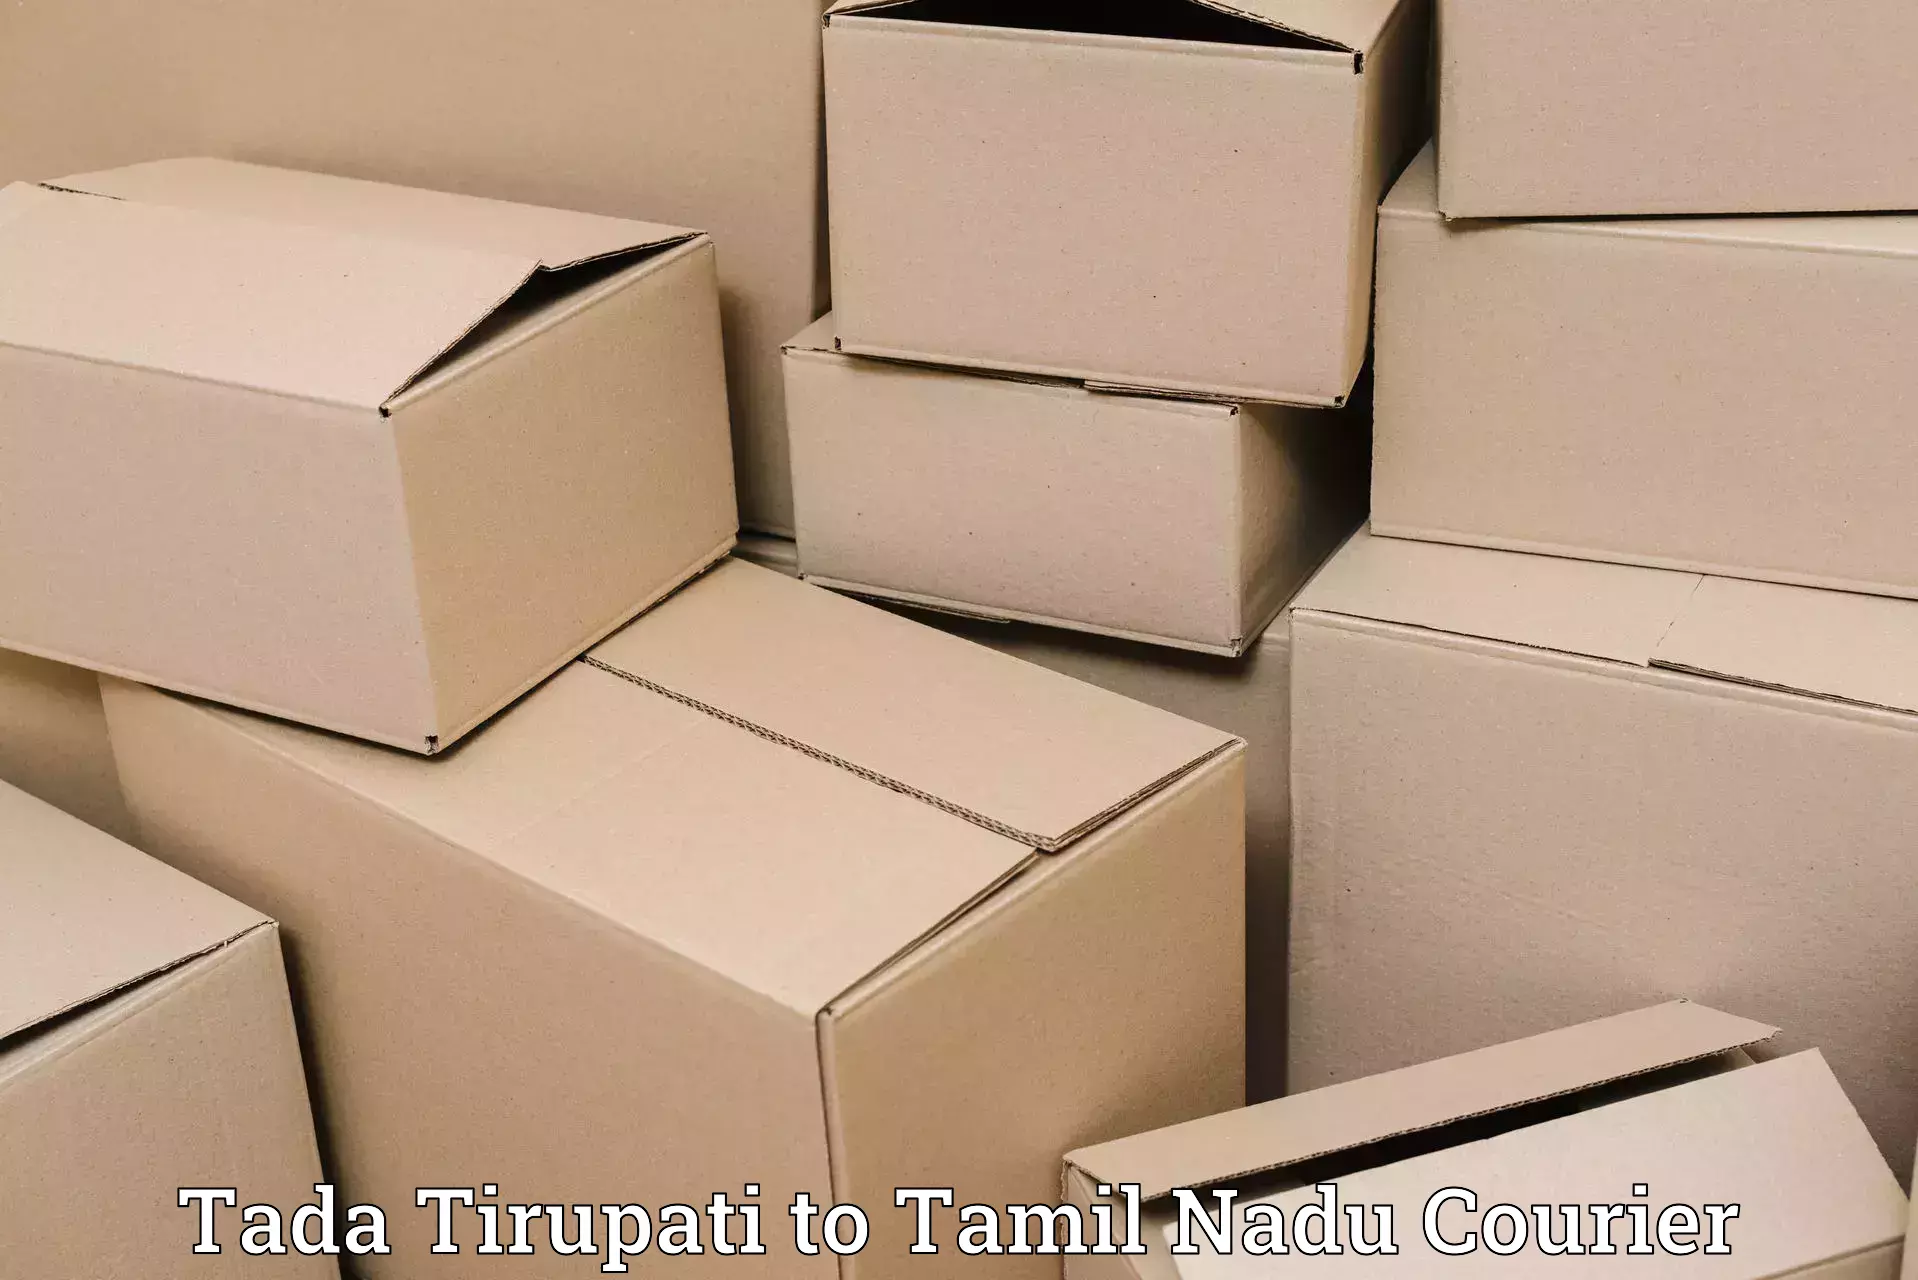 Luggage transport deals Tada Tirupati to Tamil Nadu